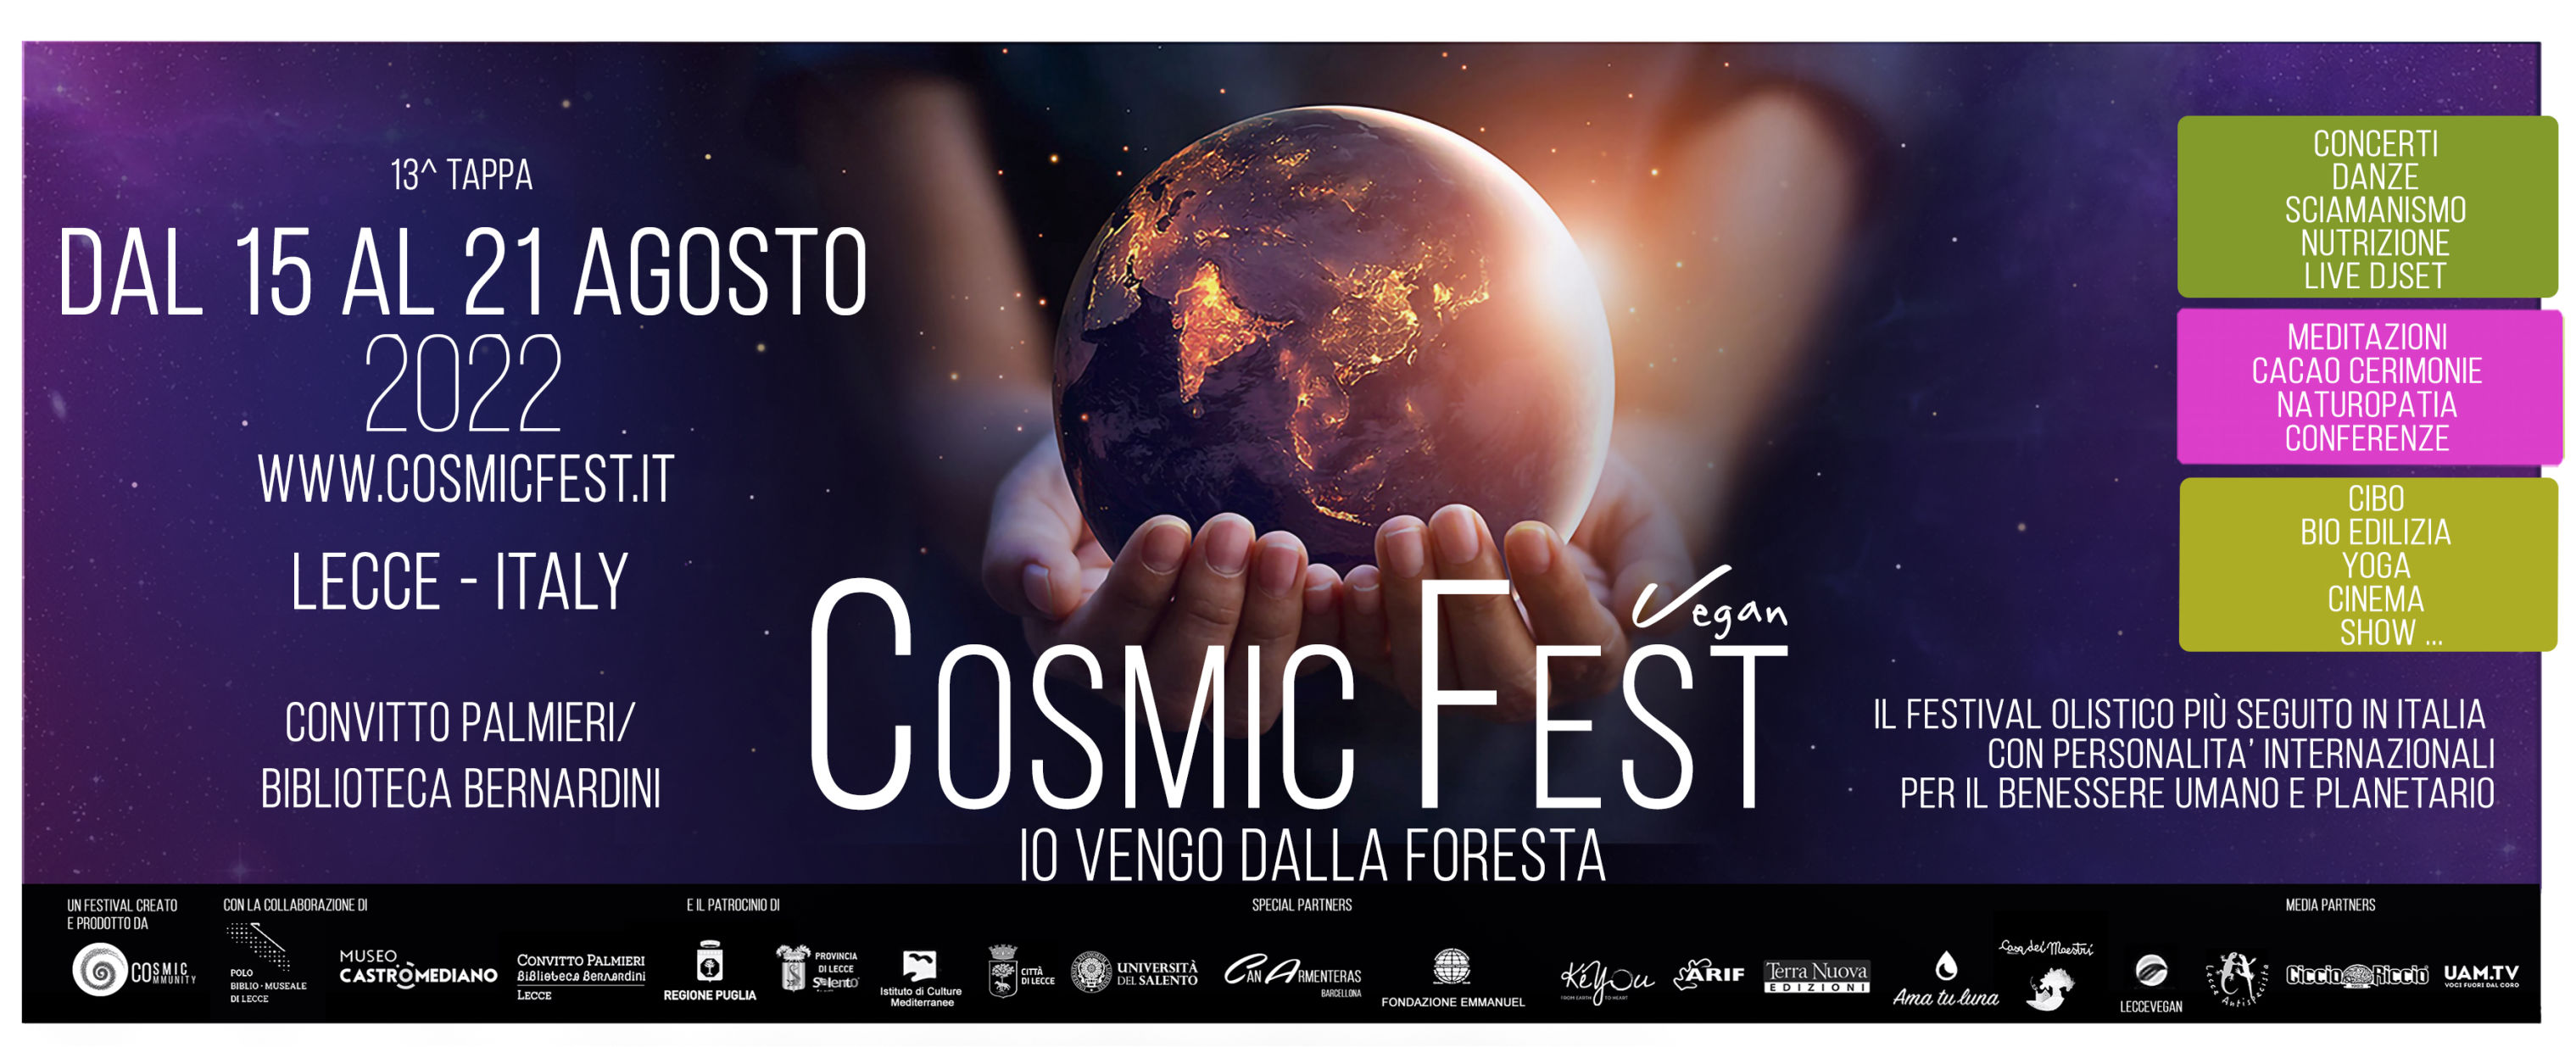 Cosmic Vegan Fest 2022 Puglia